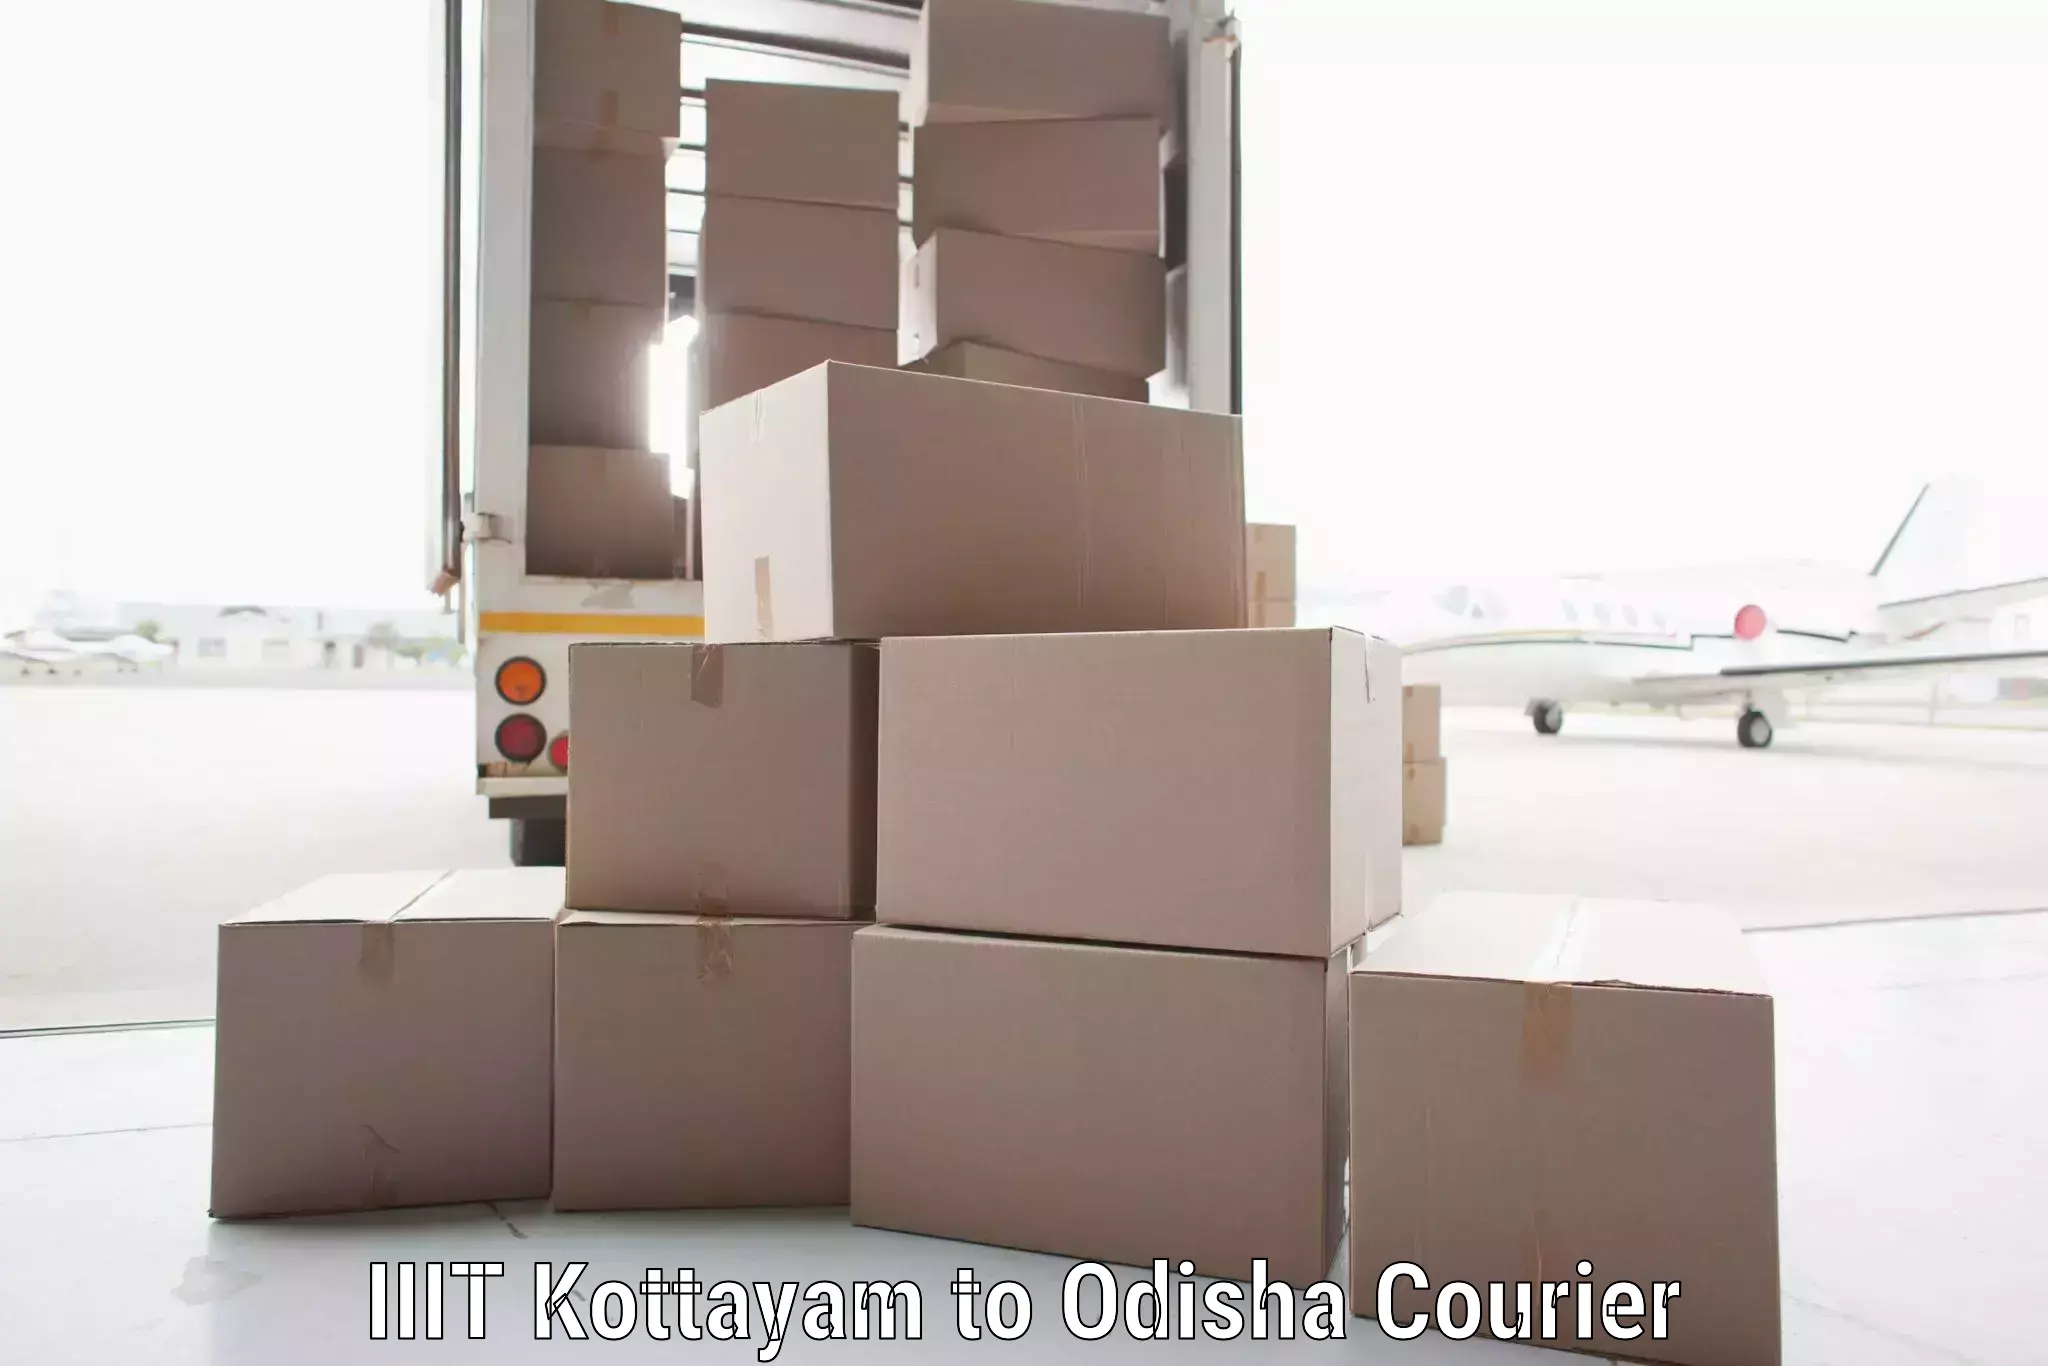 Next-day delivery options IIIT Kottayam to Odisha